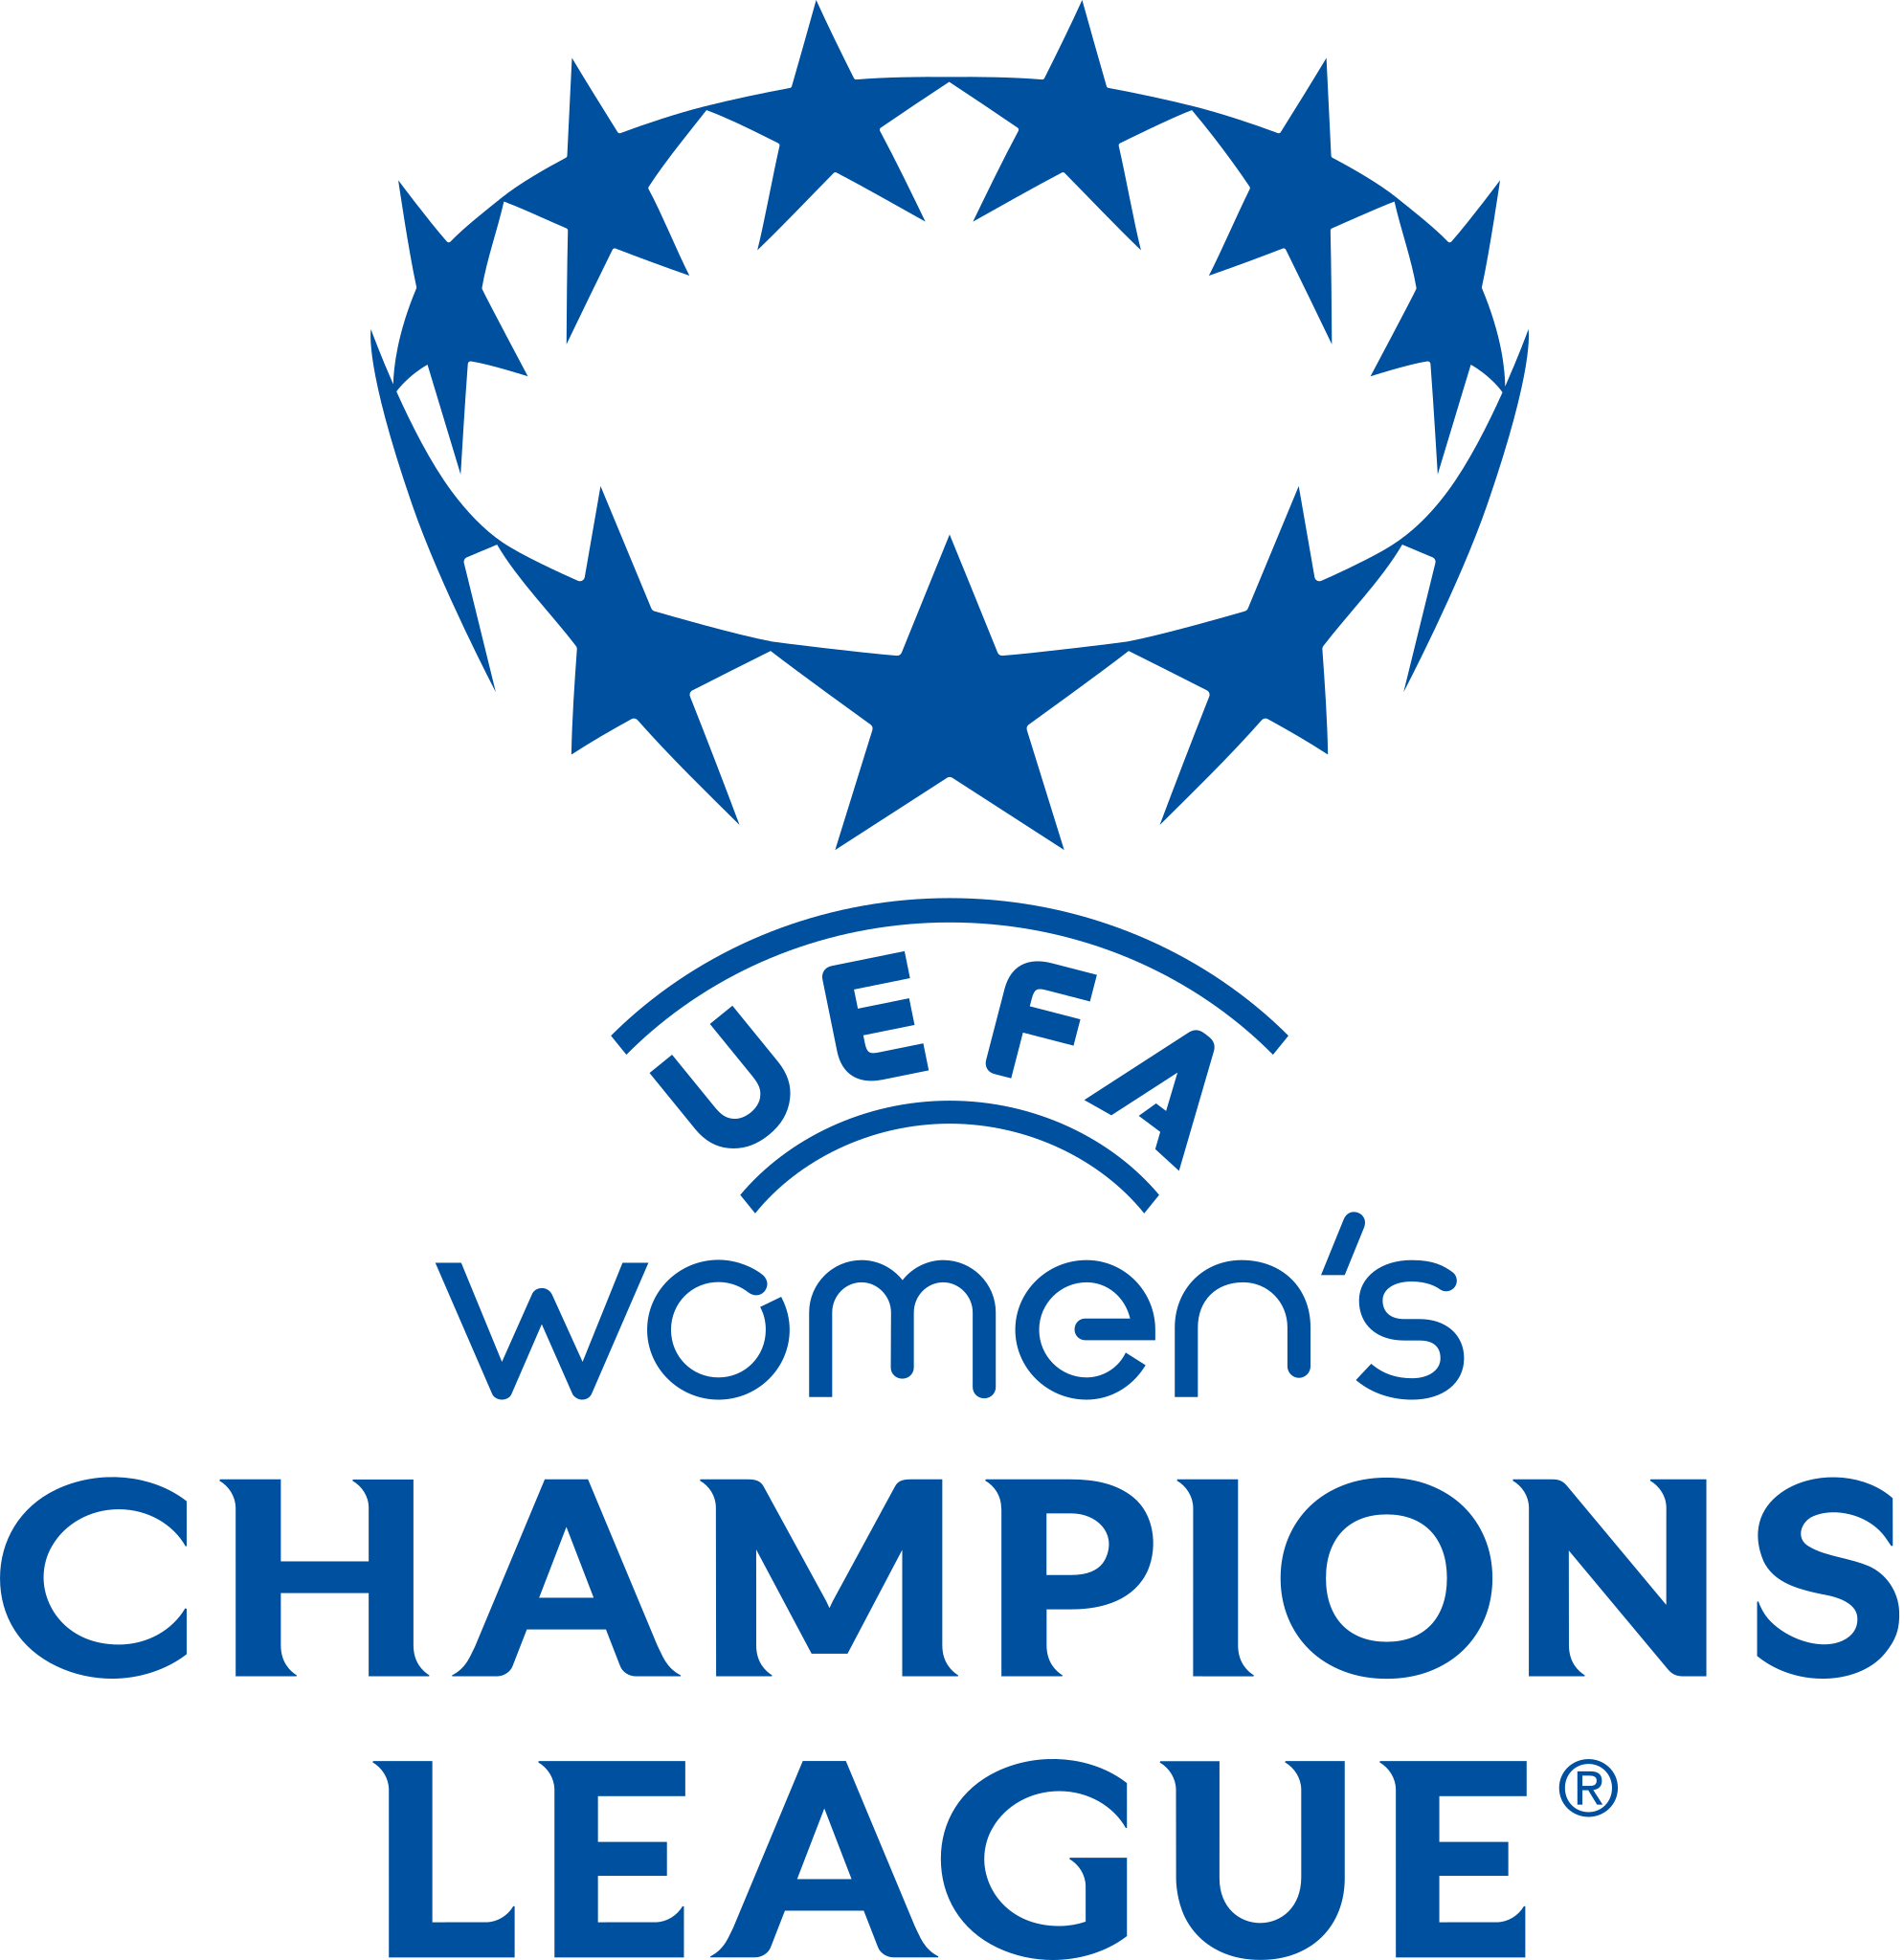 Cardiff City Football Club (féminines) — Wikipédia